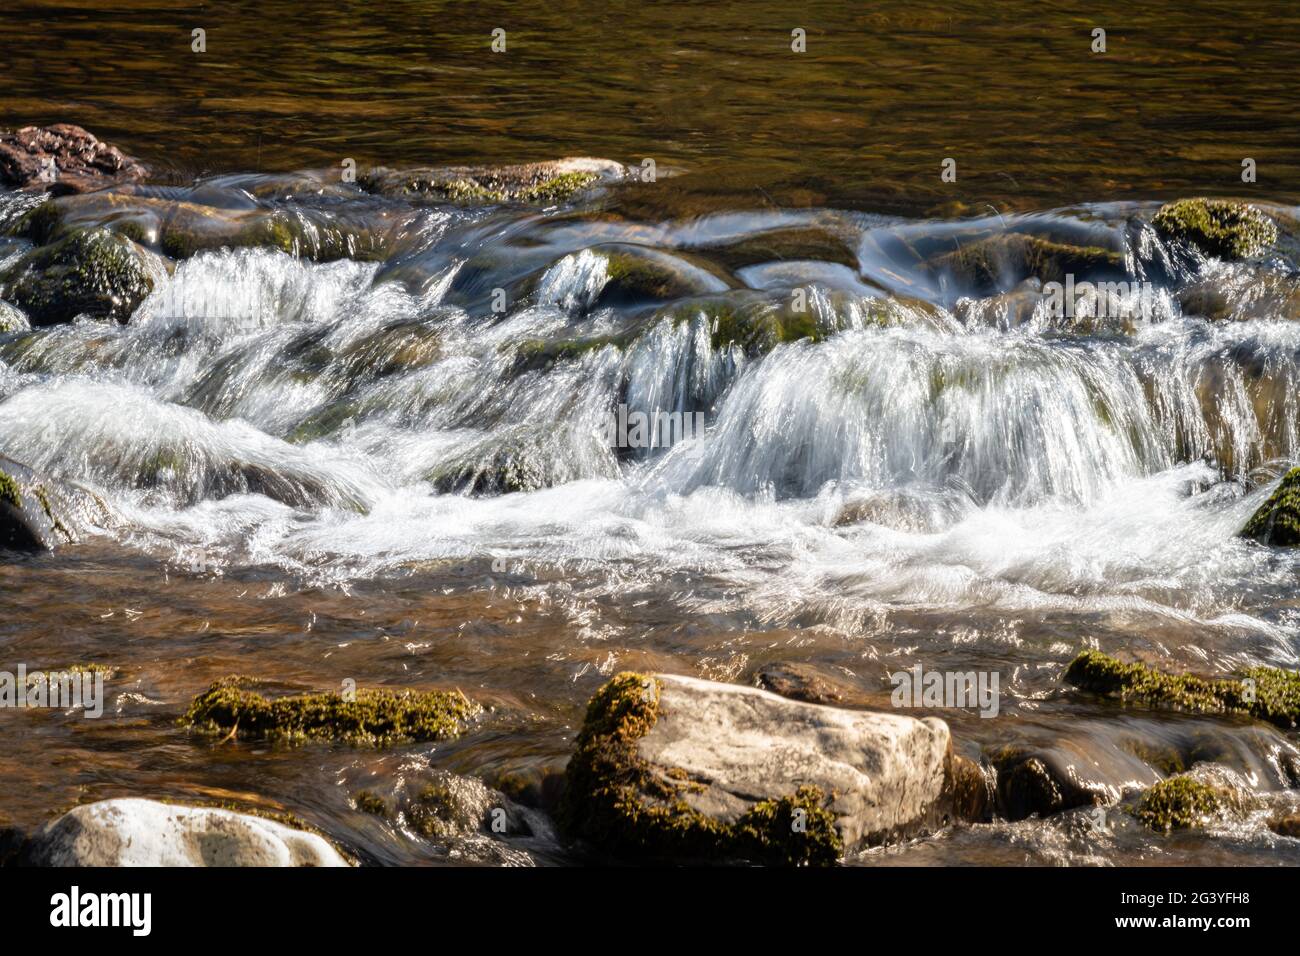 Gushing Water, Teviot River, Scotland Stock Photo